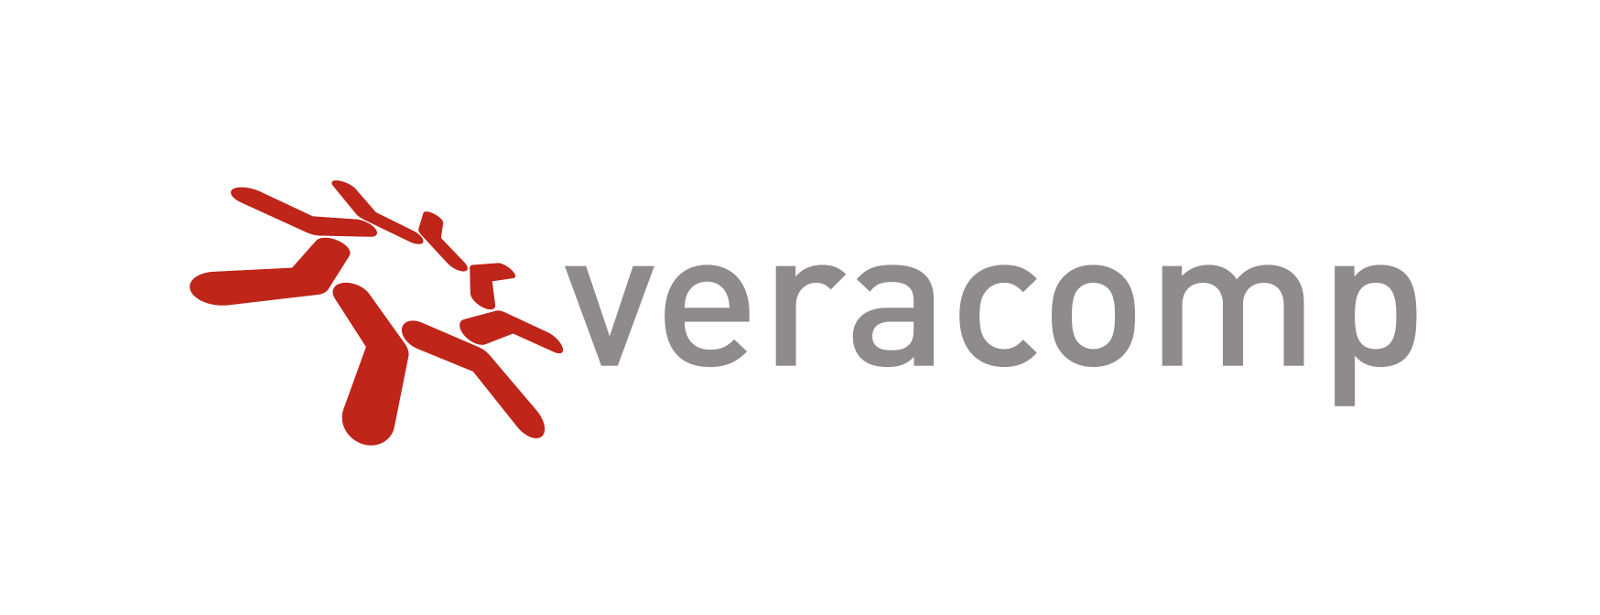 Veracomp dystrybutorem F5 Networks w krajach adriatyckich